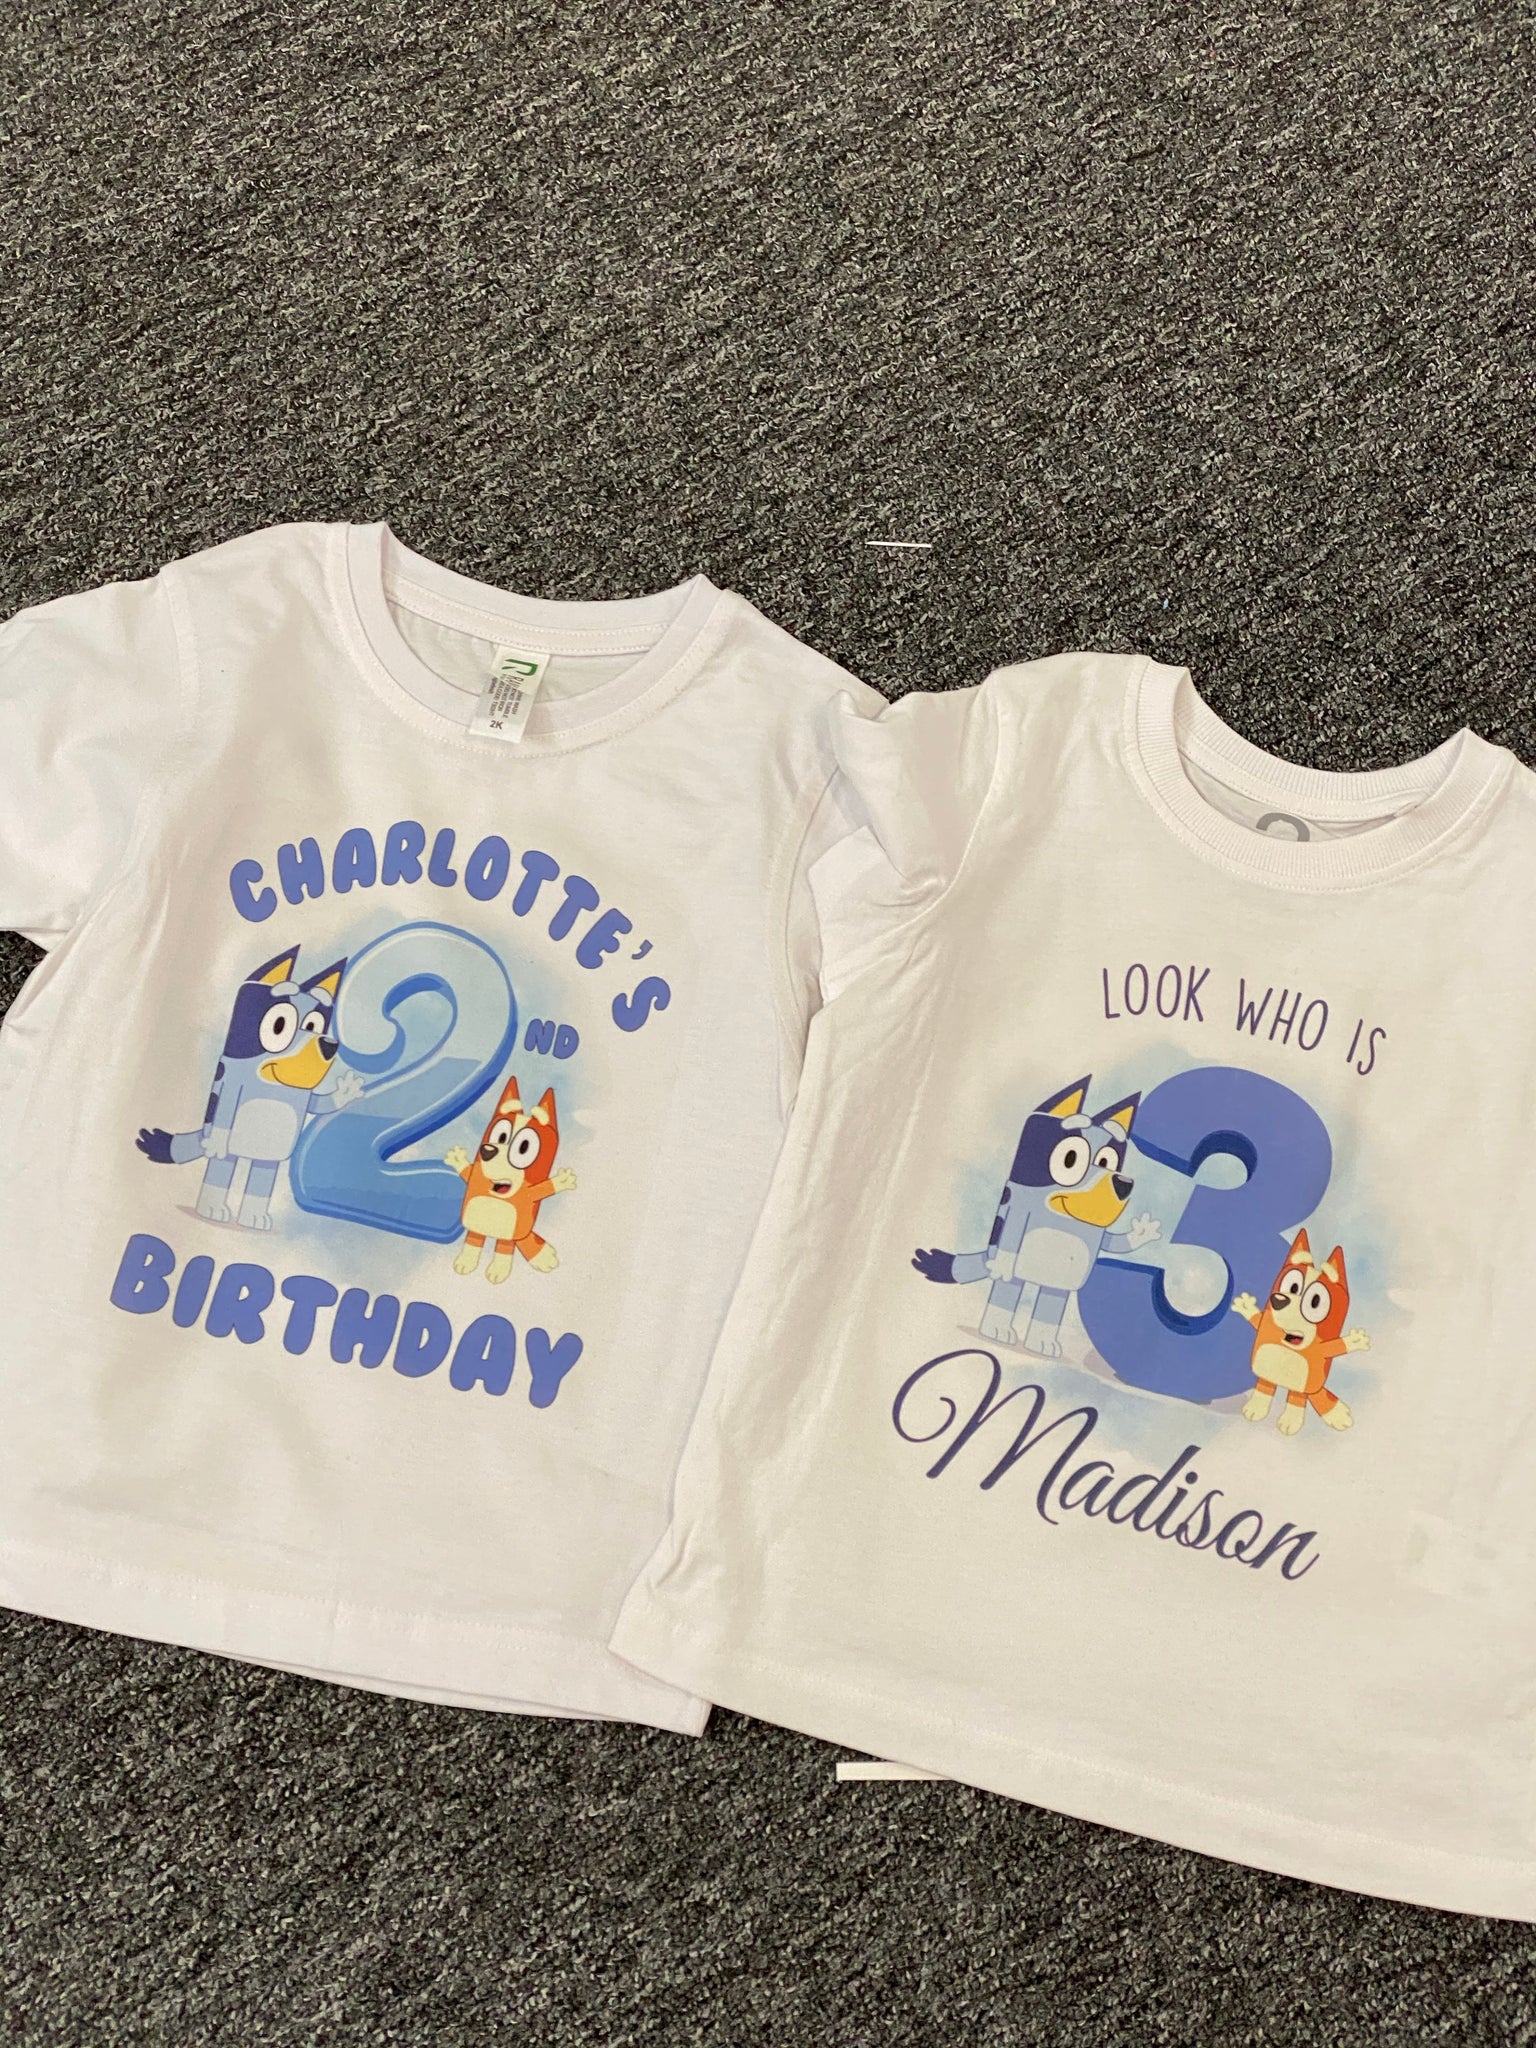 Bluey Birthday Tshirt – Rainbow Skye Designs